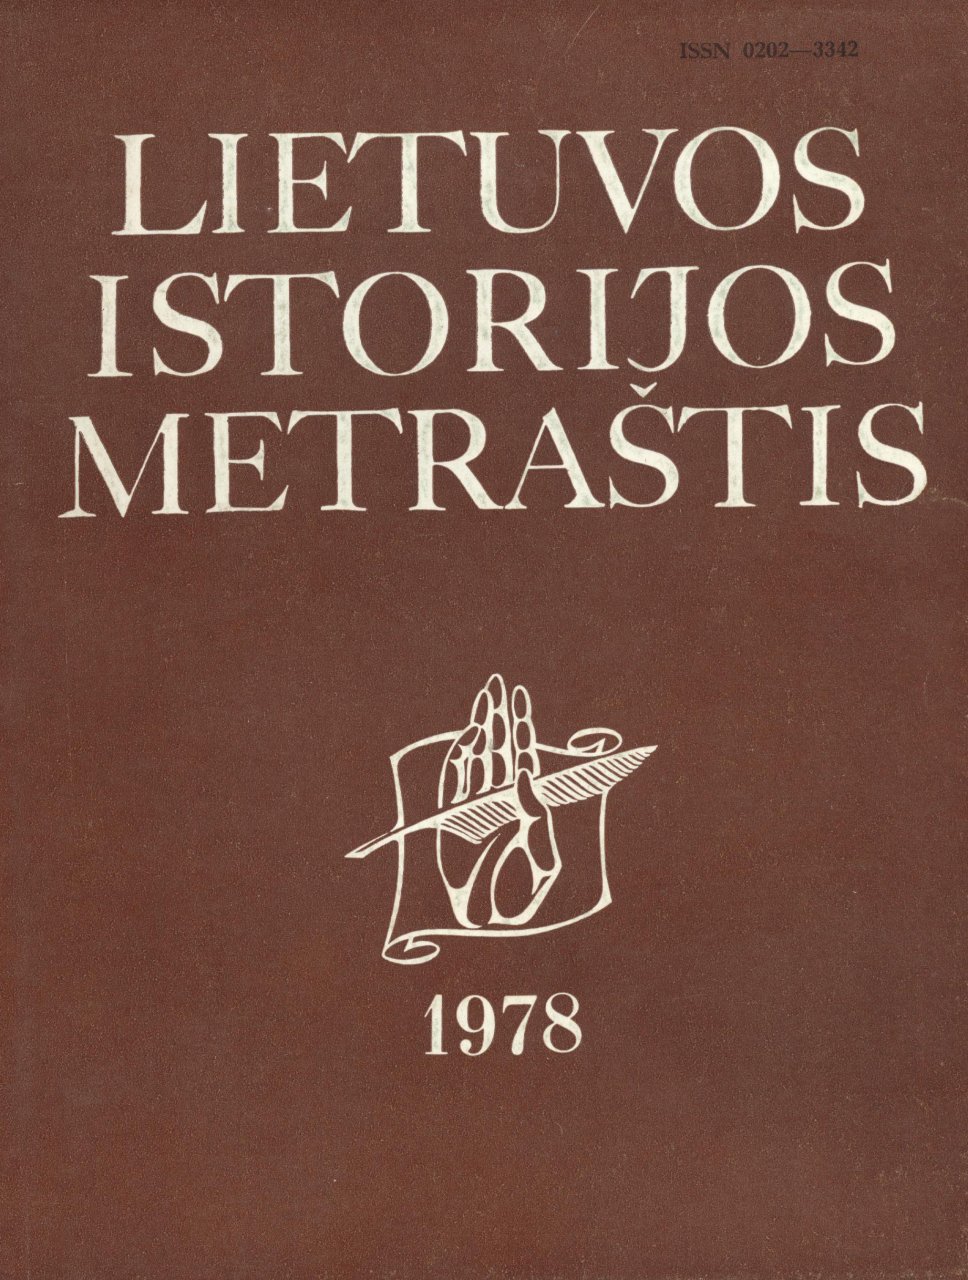 Lietuvos istorijos metraštis 1978 metai